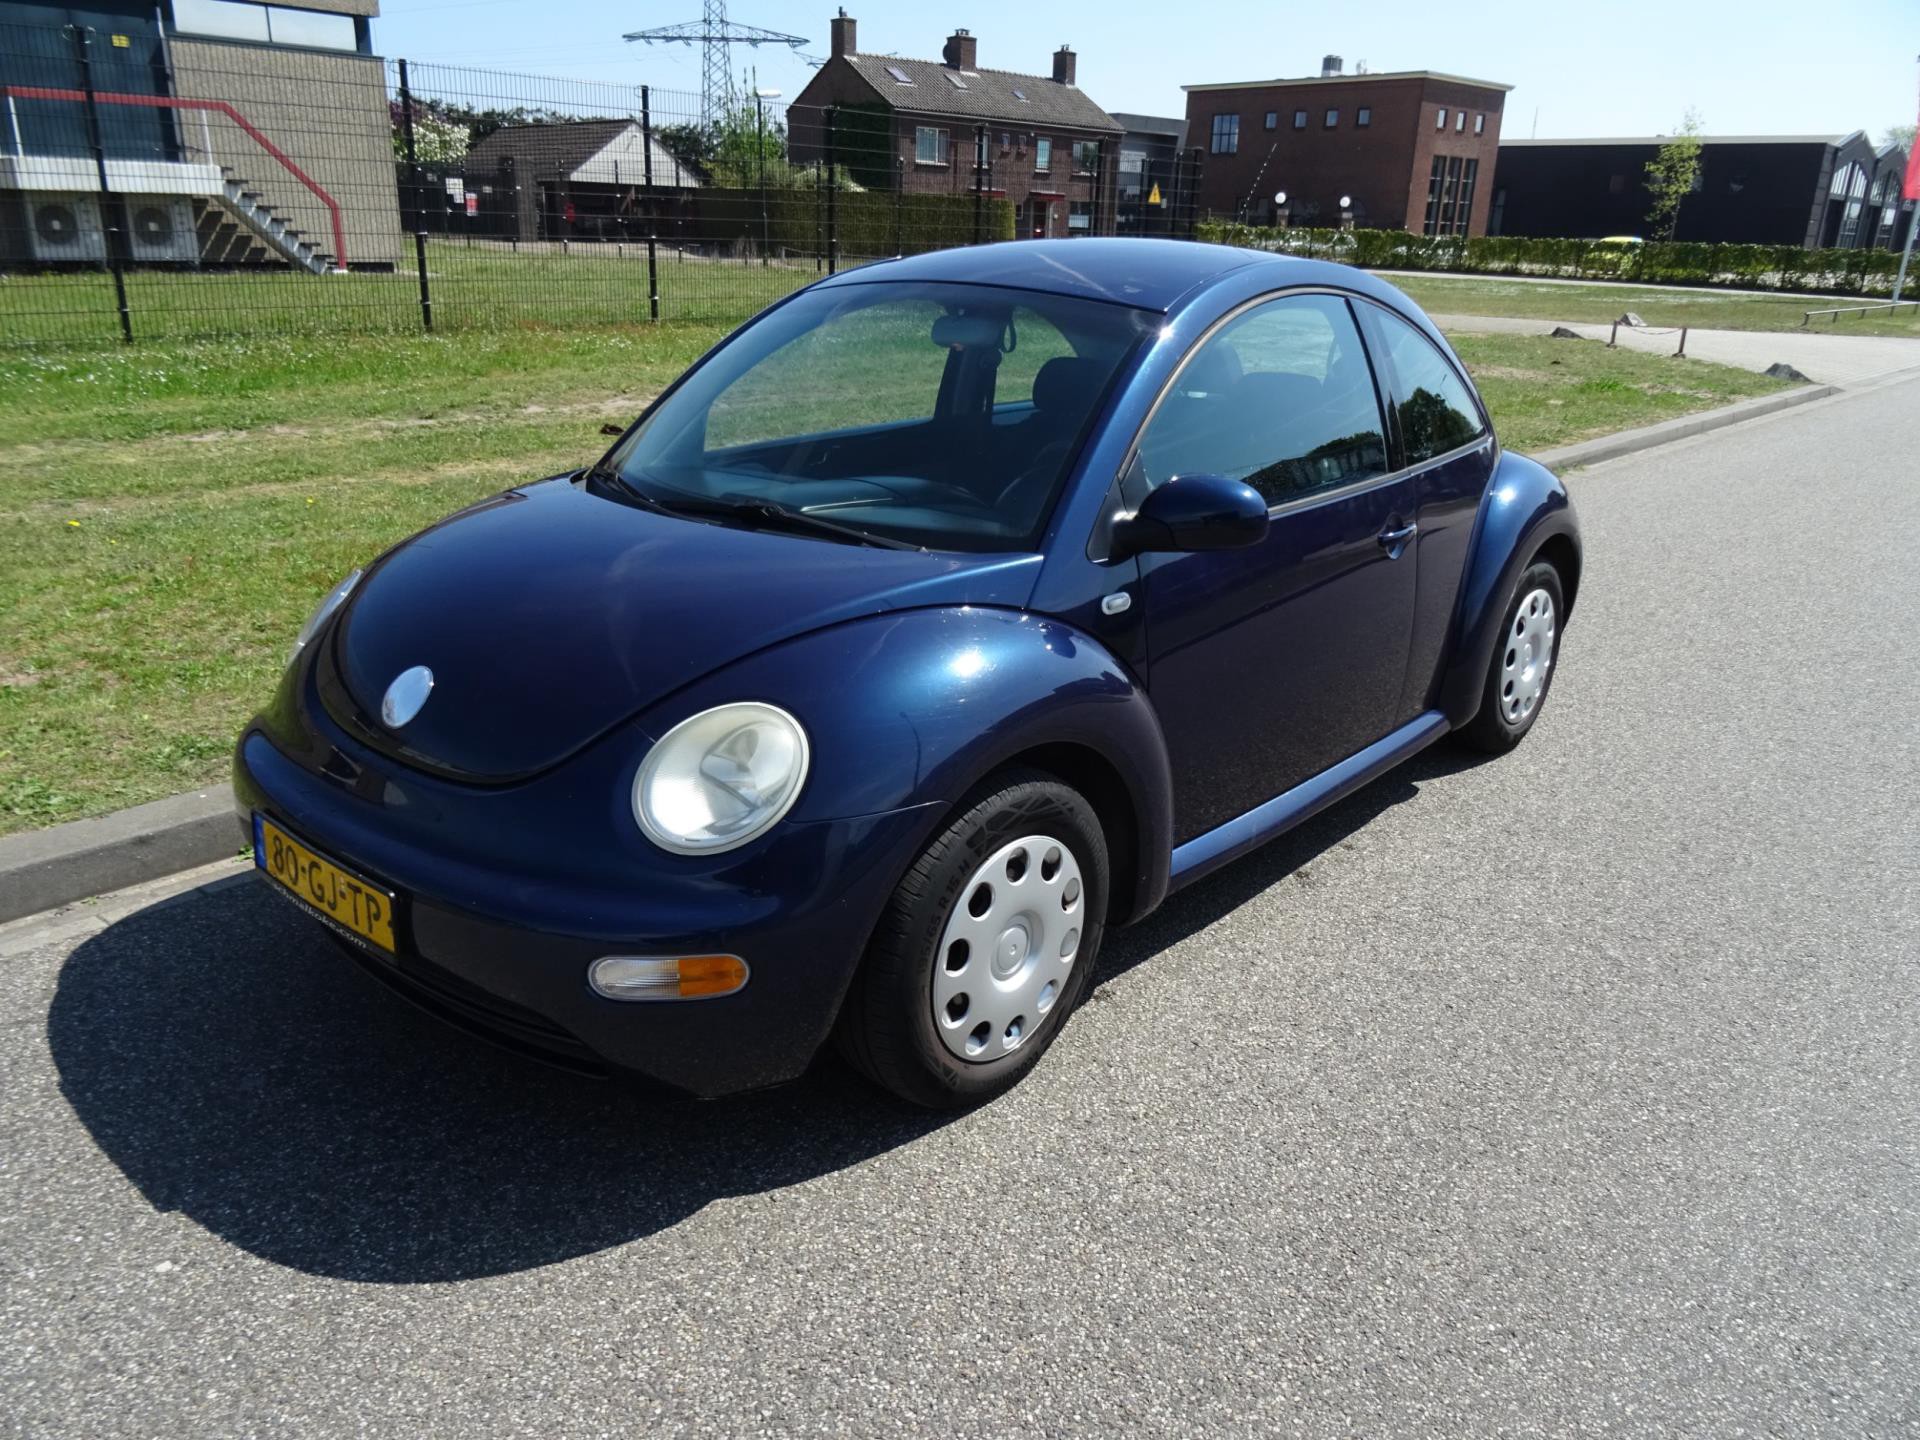 670521659/volkswagen-new-beetle-image1.jpg